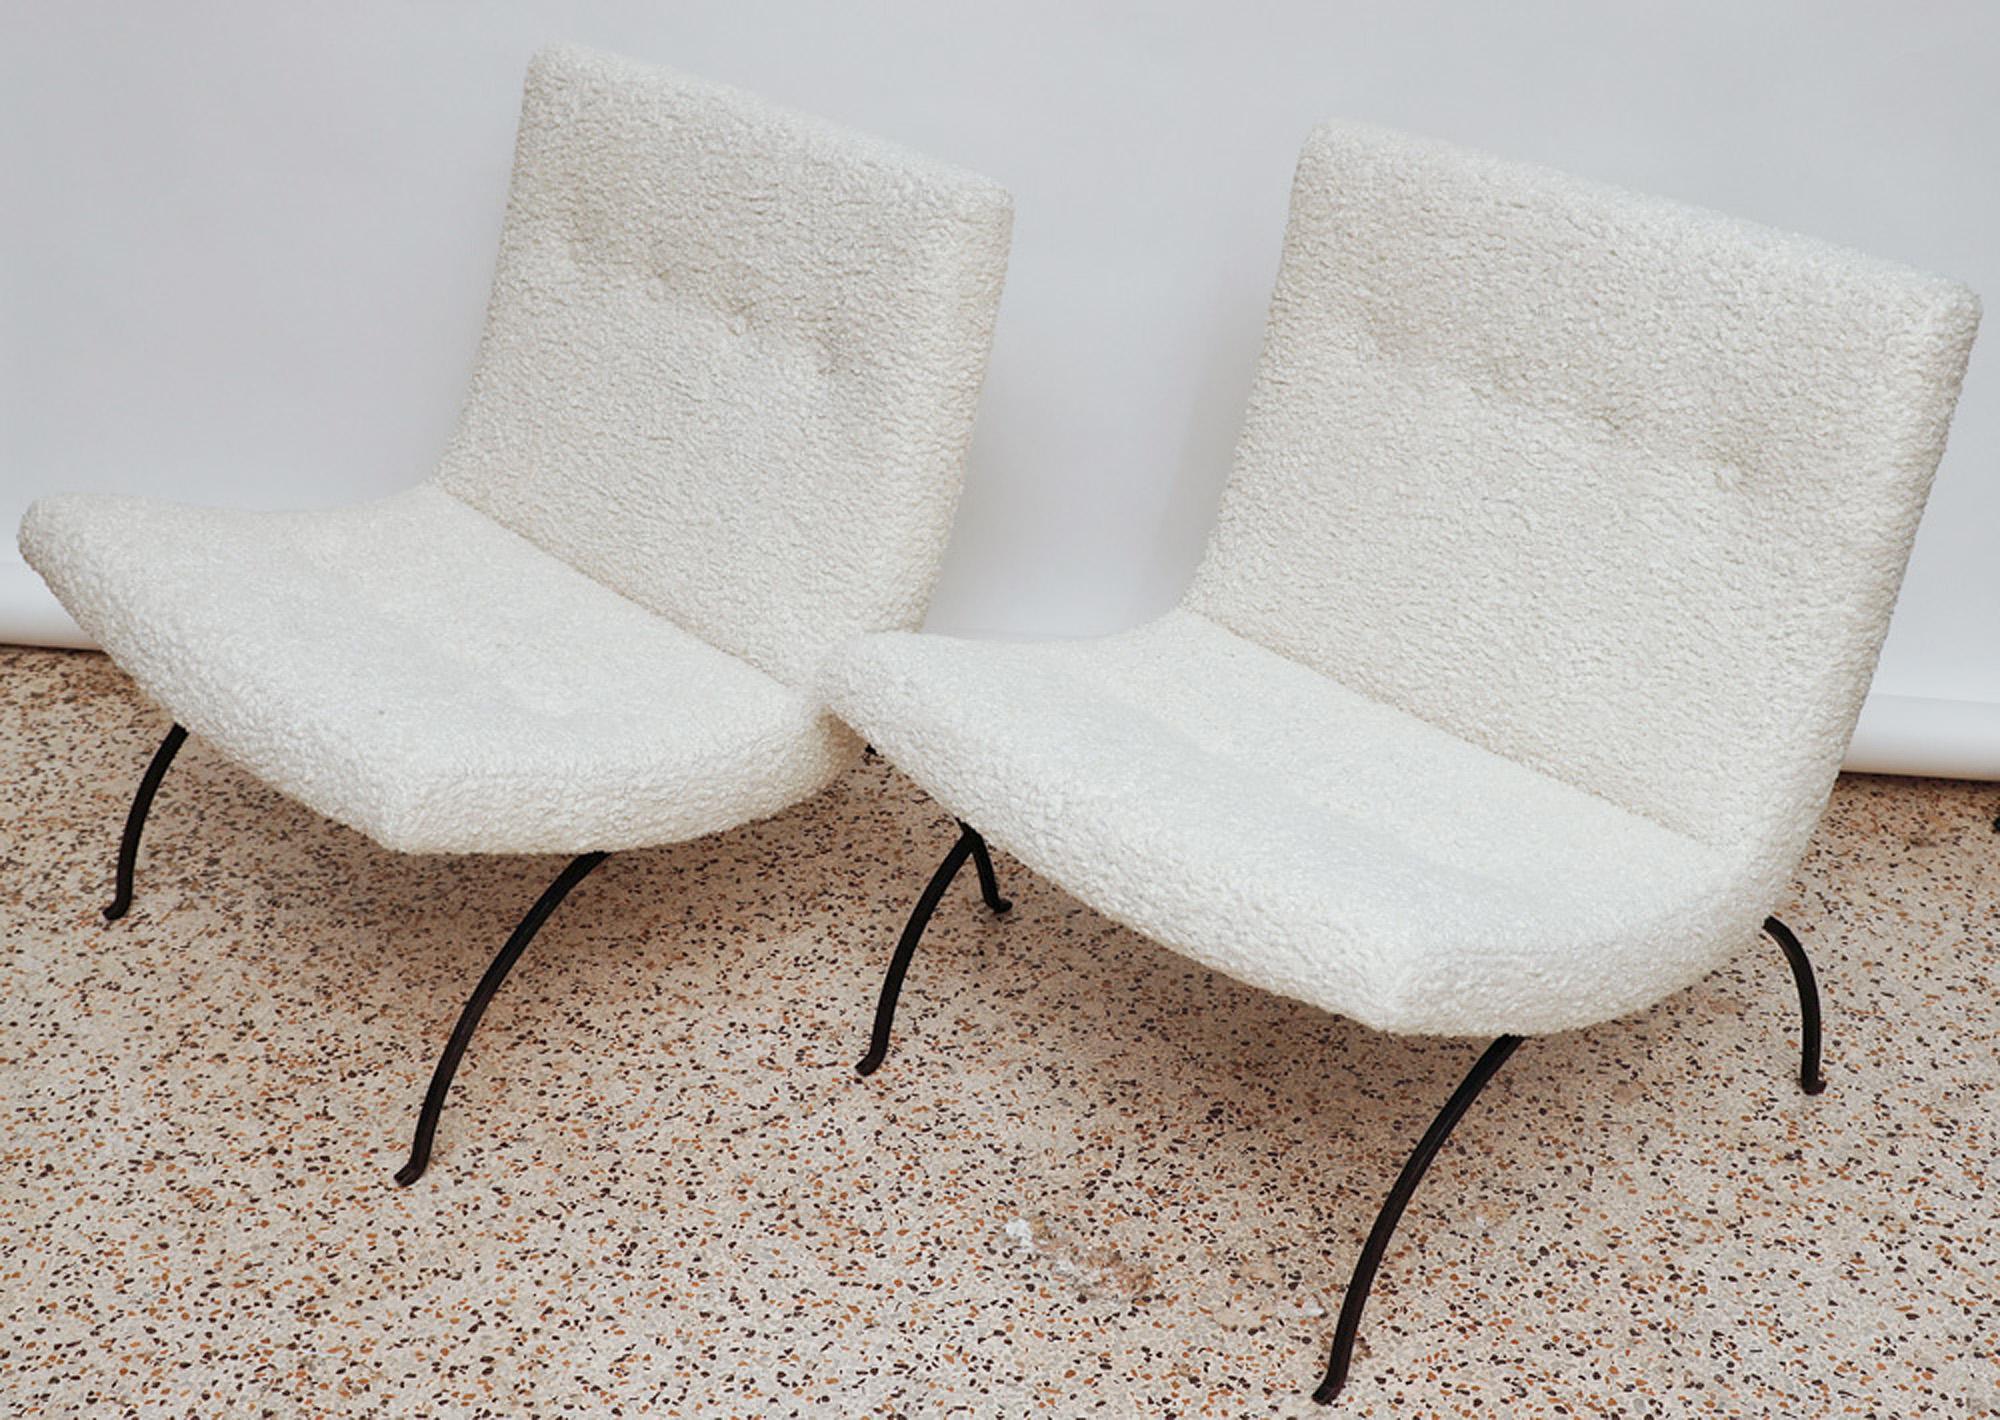 Zwei bequeme und stilvolle Scoop-Sessel mit Eisenrahmen, entworfen von Milo Baughman für James Mfg. um 1960, neu gepolstert mit bequemem Shearling-Kunstleder. 

Eine Ikone des Mid-Century-Designs!